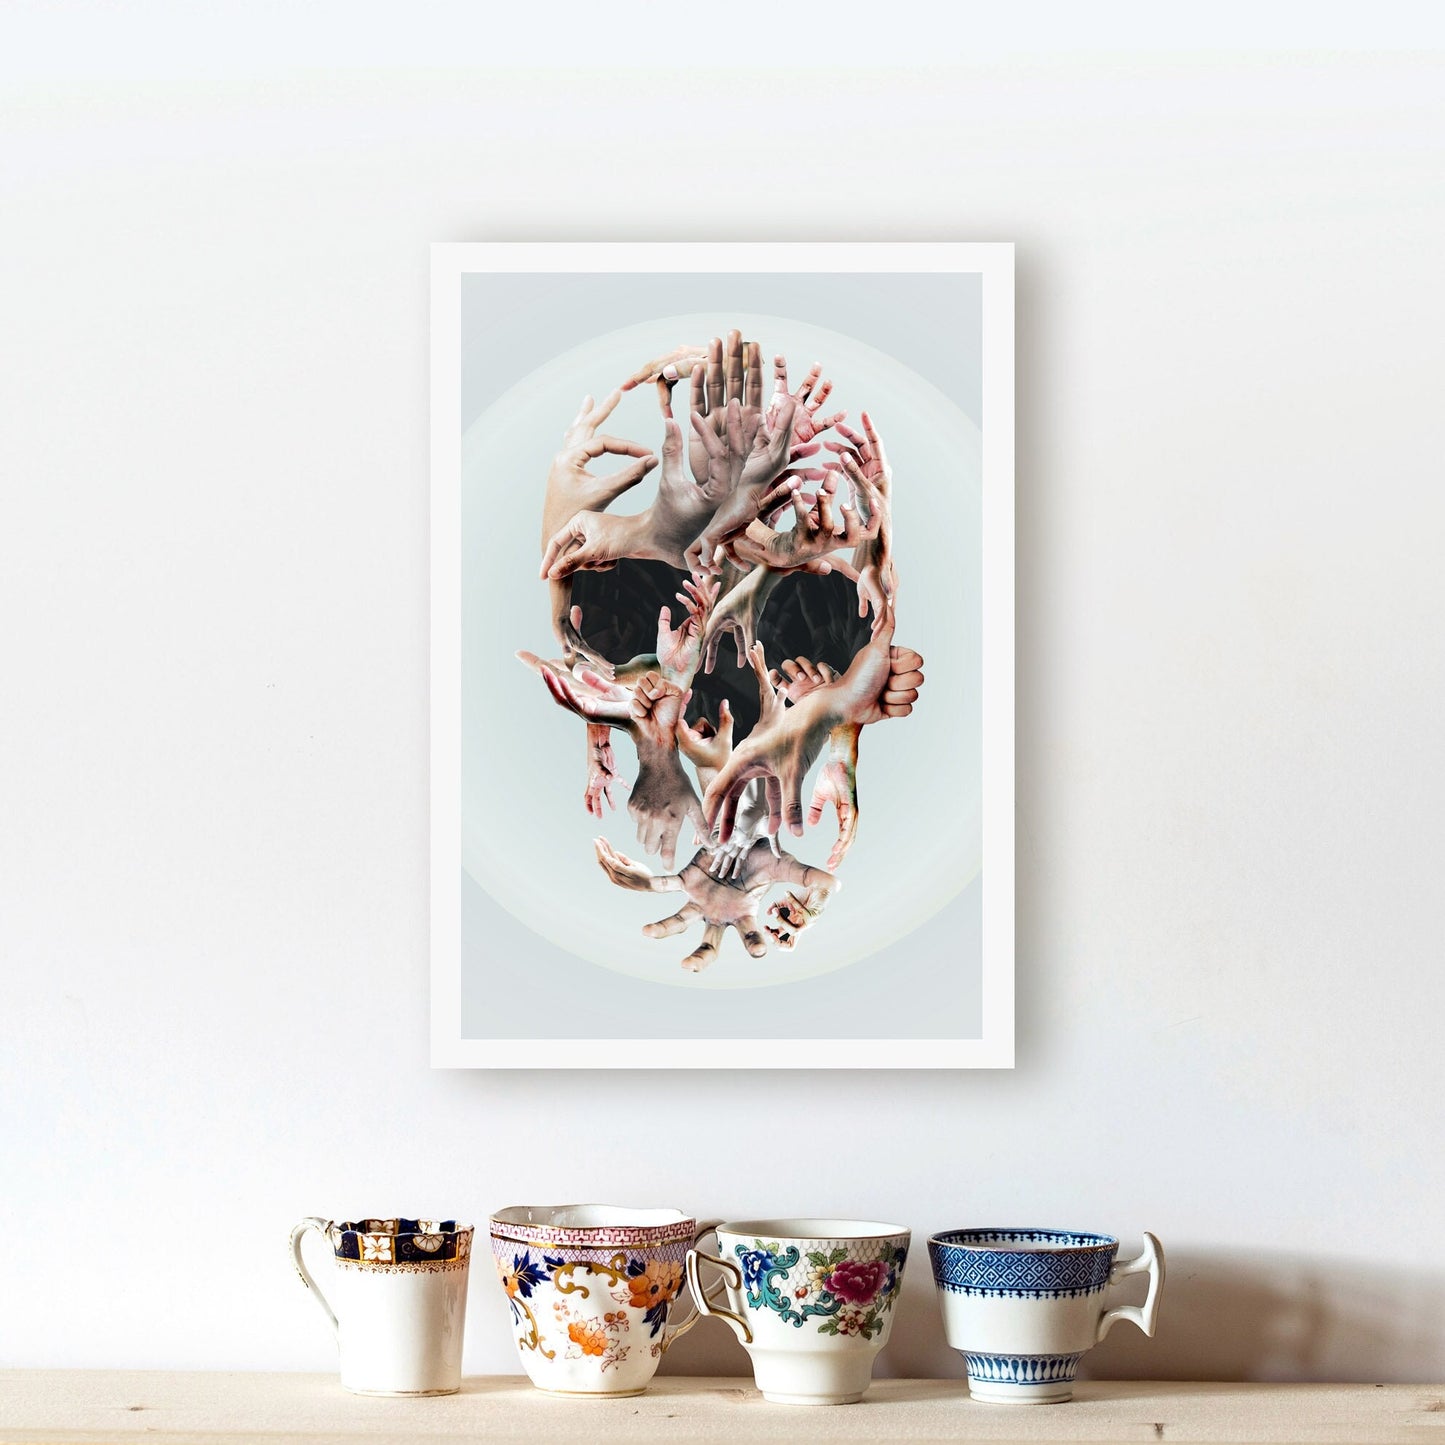 Hands Skull Poster, Sugar Skull Art Print, Original Wall Art, Skull Gift, Skull Illusion Home Decor, Illustration by Ali Gulec